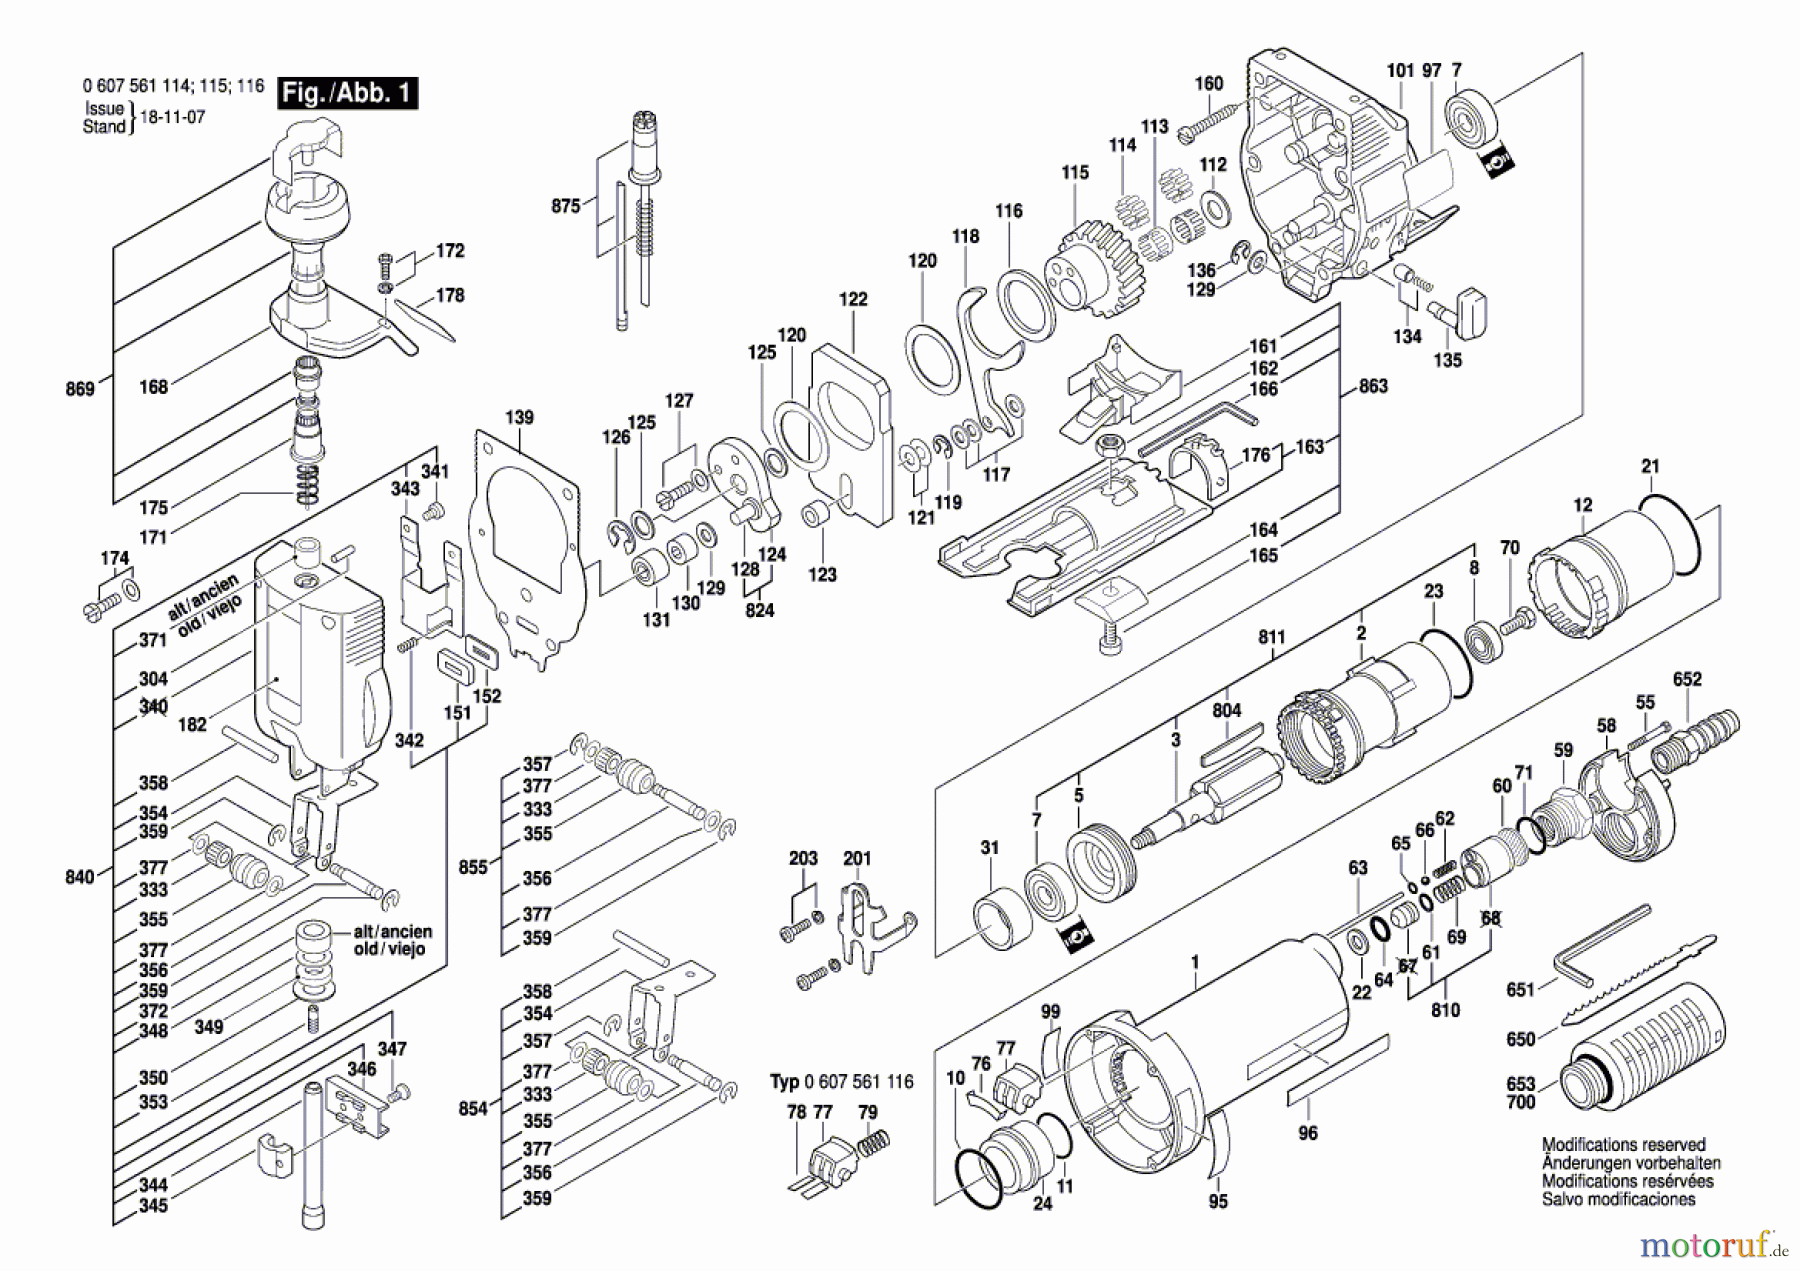  Bosch Werkzeug Pw-Stichsäge 400-WATT-SERIE Seite 1